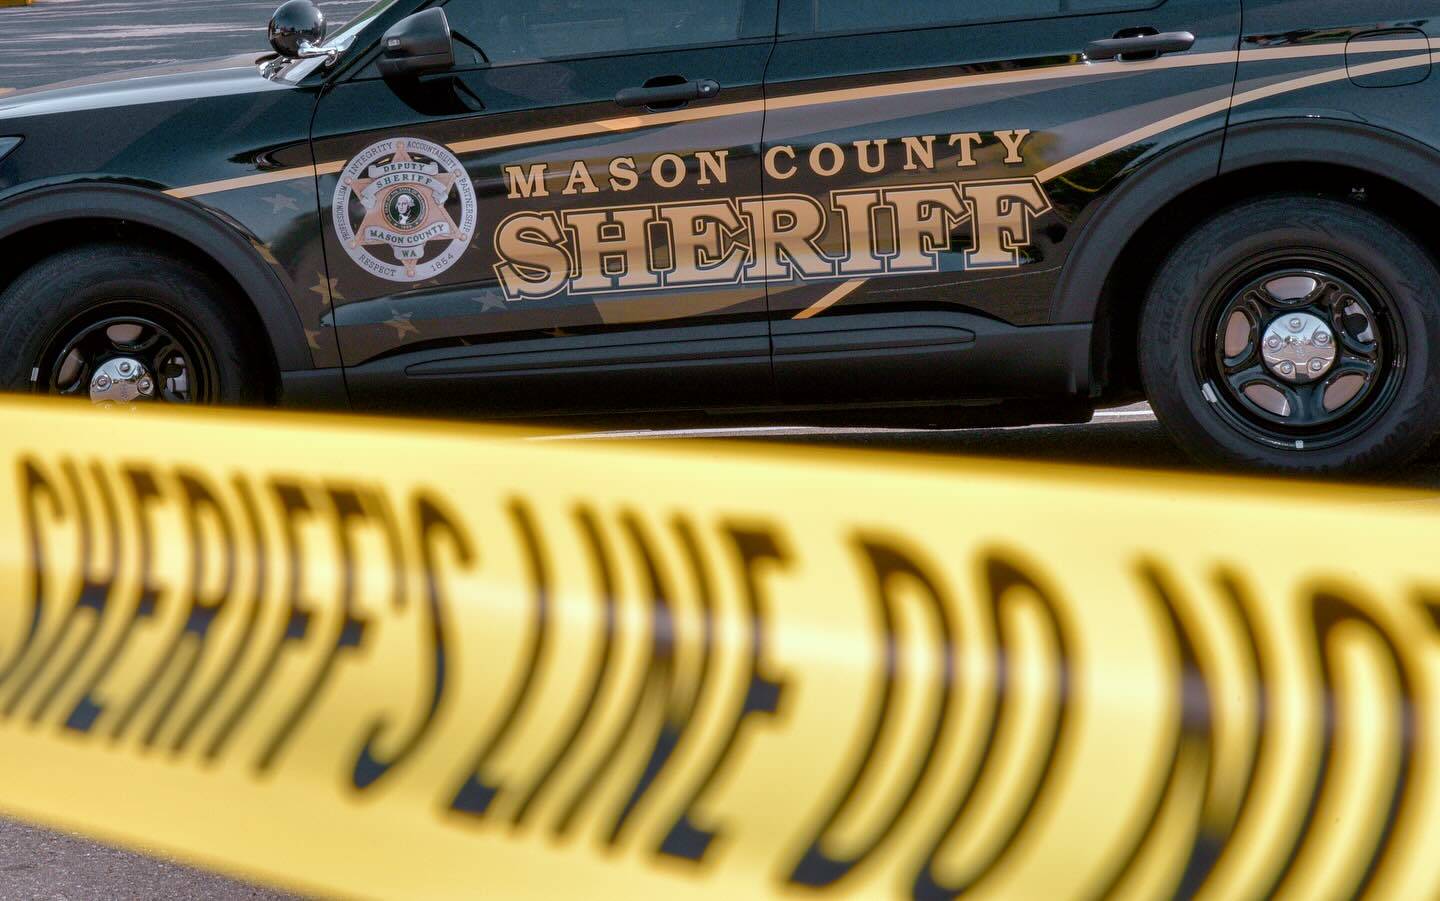 Mason County sheriff’s courtesy image